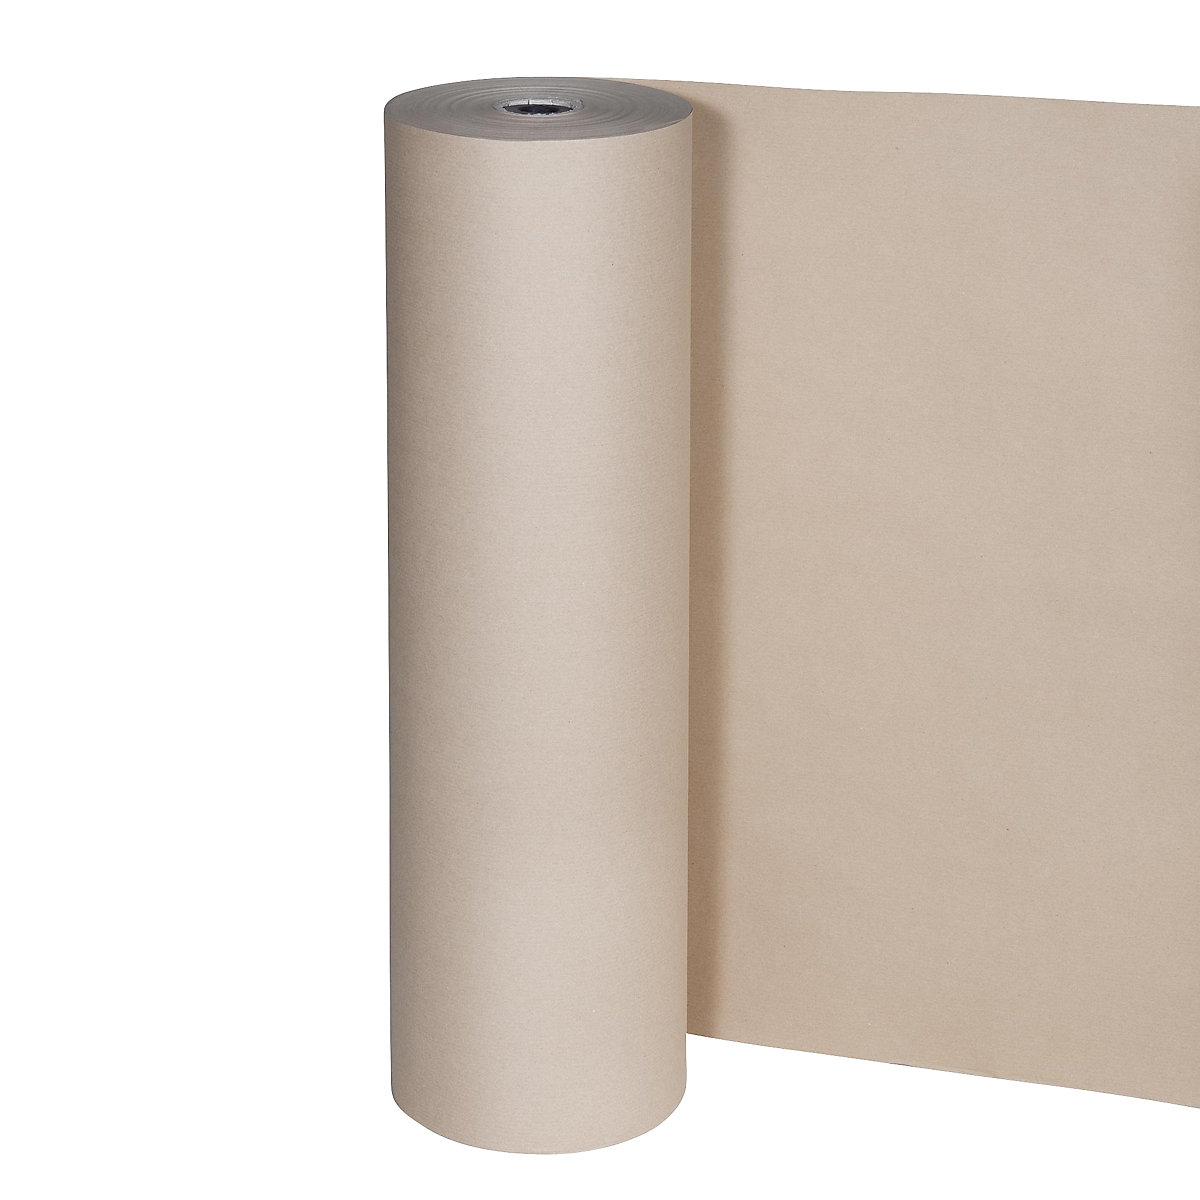 Hârtie pentru ambalat, 80 g/m², rolă pentru tăiat, 750 mm lățime, amb. 2 role-2